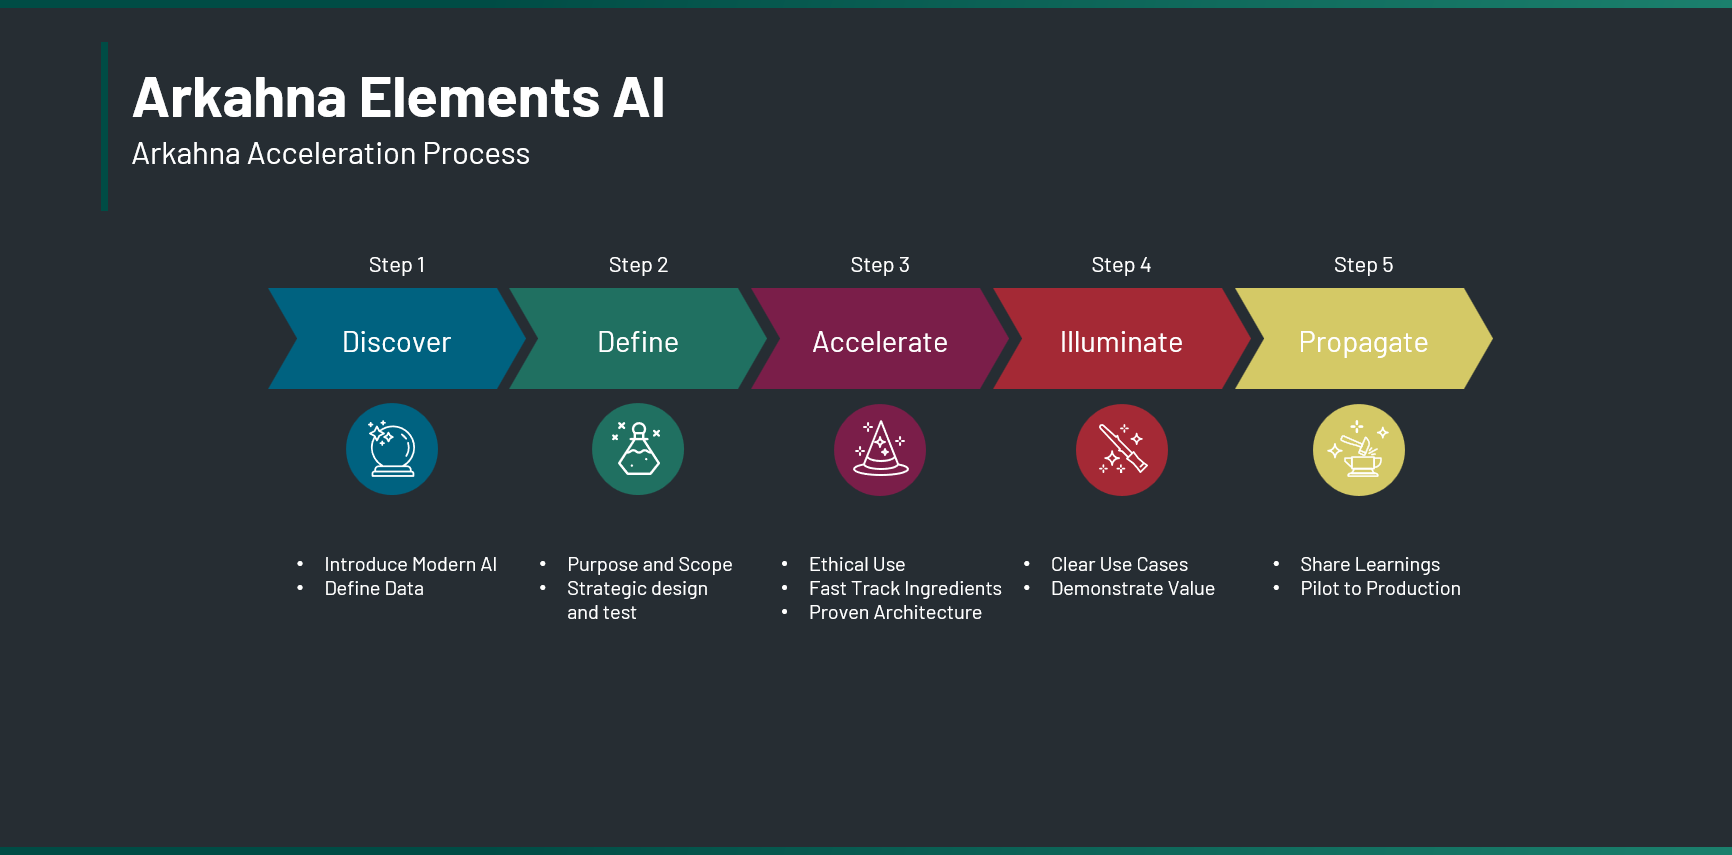 The Arkahna Elements AI acceleration process